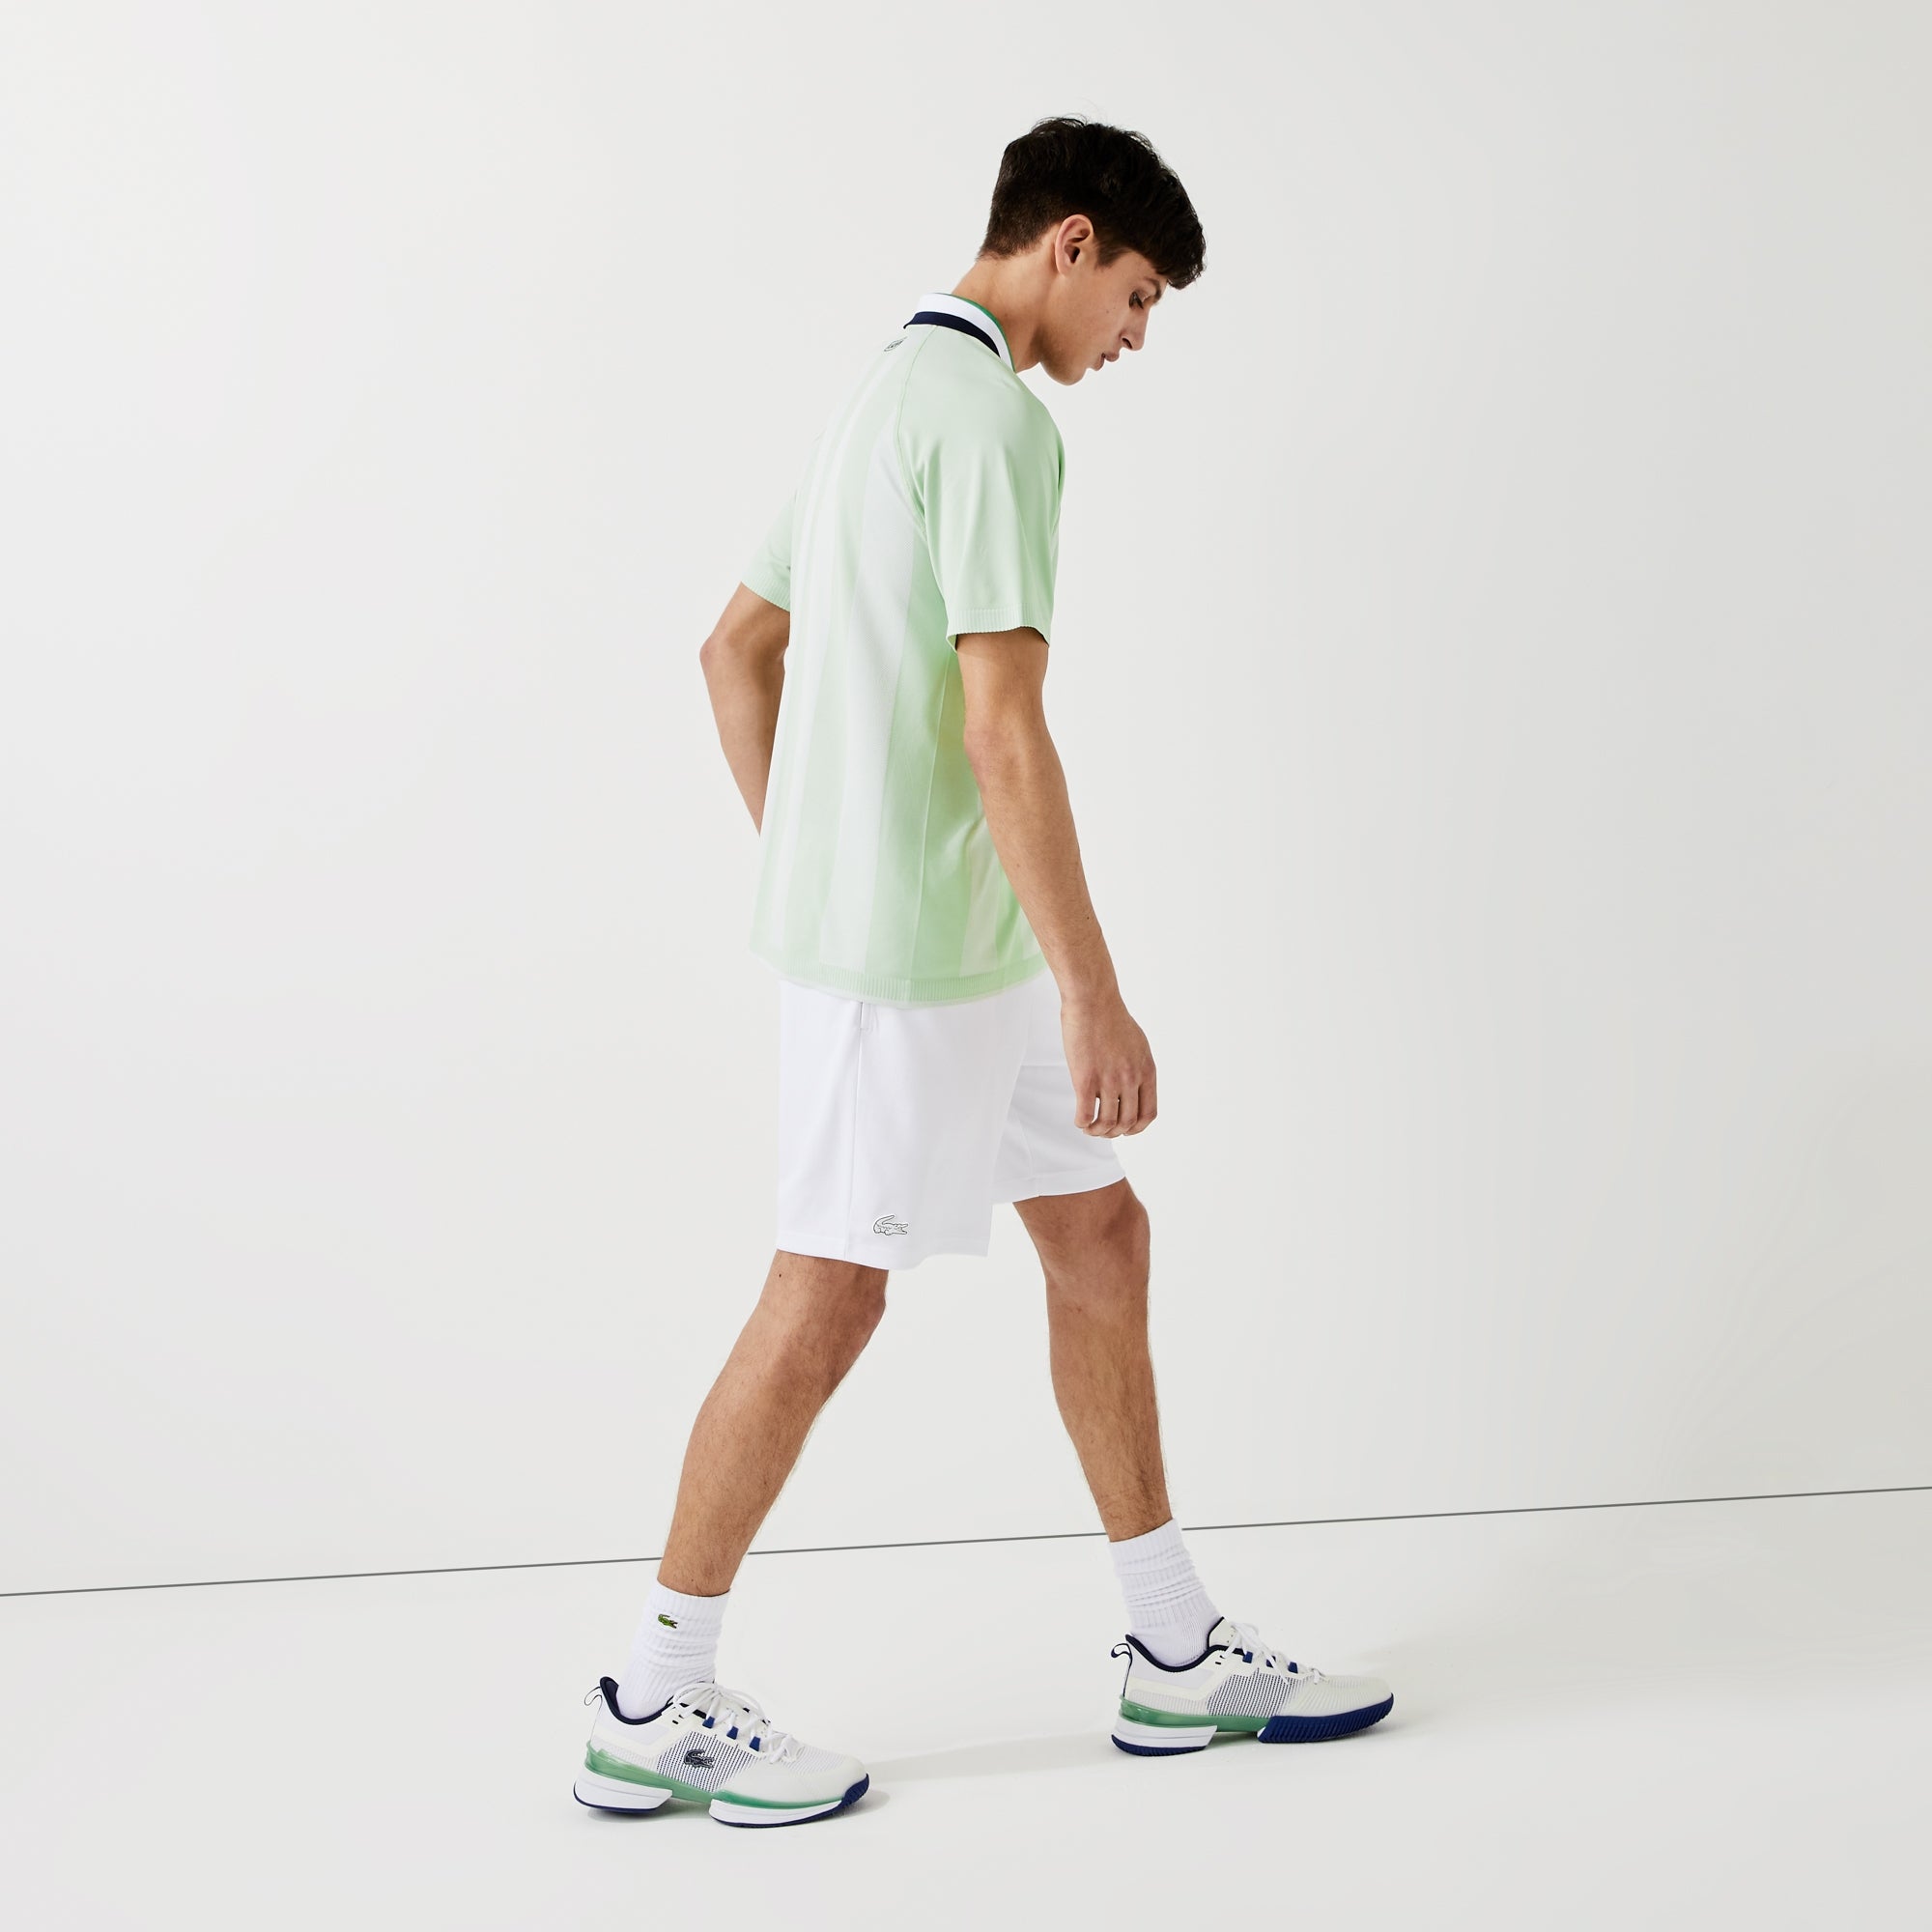 Lacoste Men's Jacquard Tennis Polo Green (5)